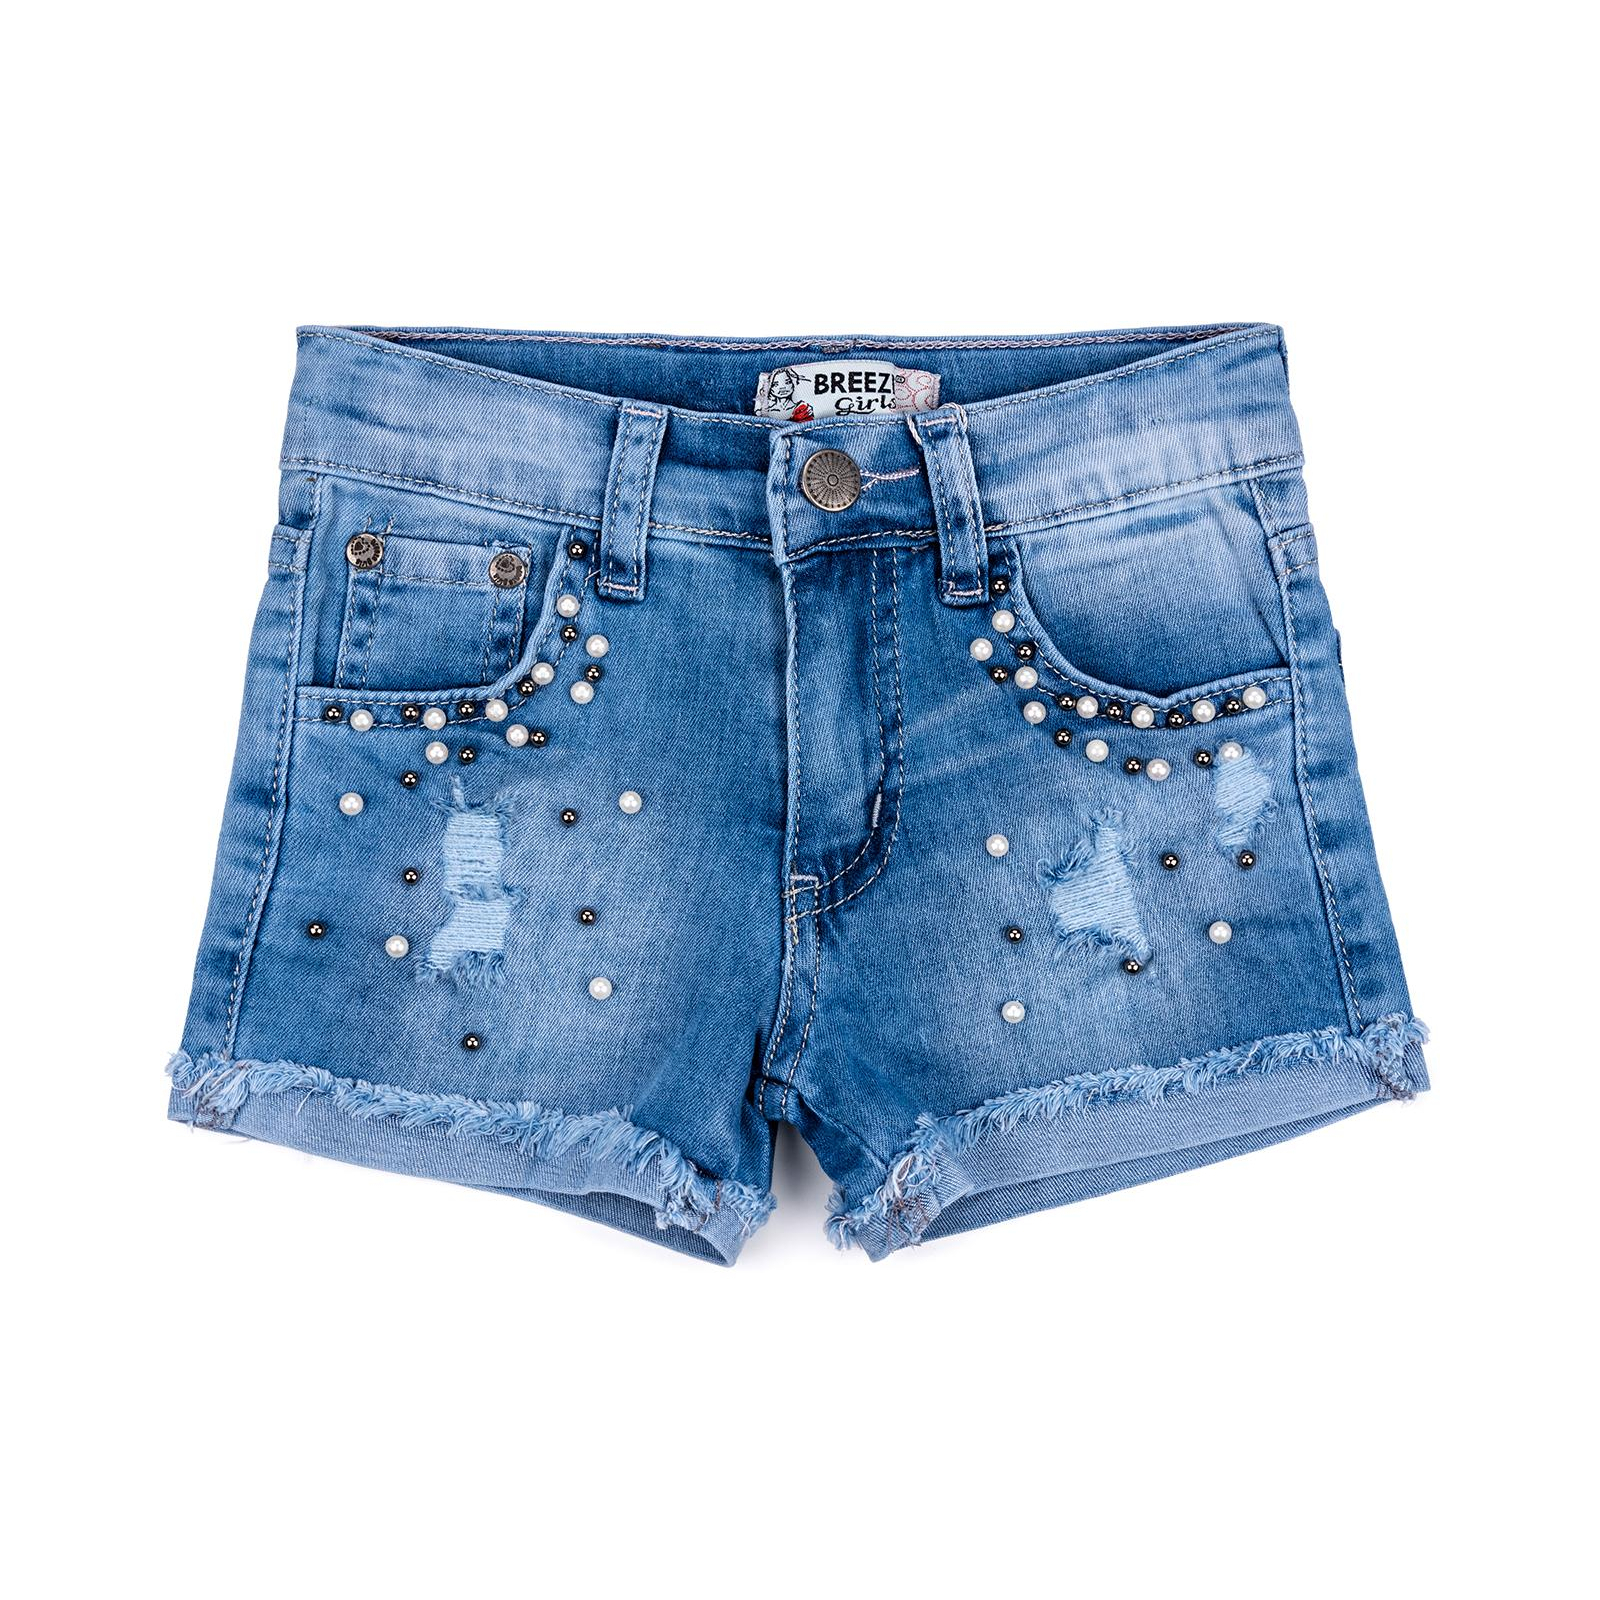 Шорты Breeze джинсовые с бусинами (20139-140G-blue)